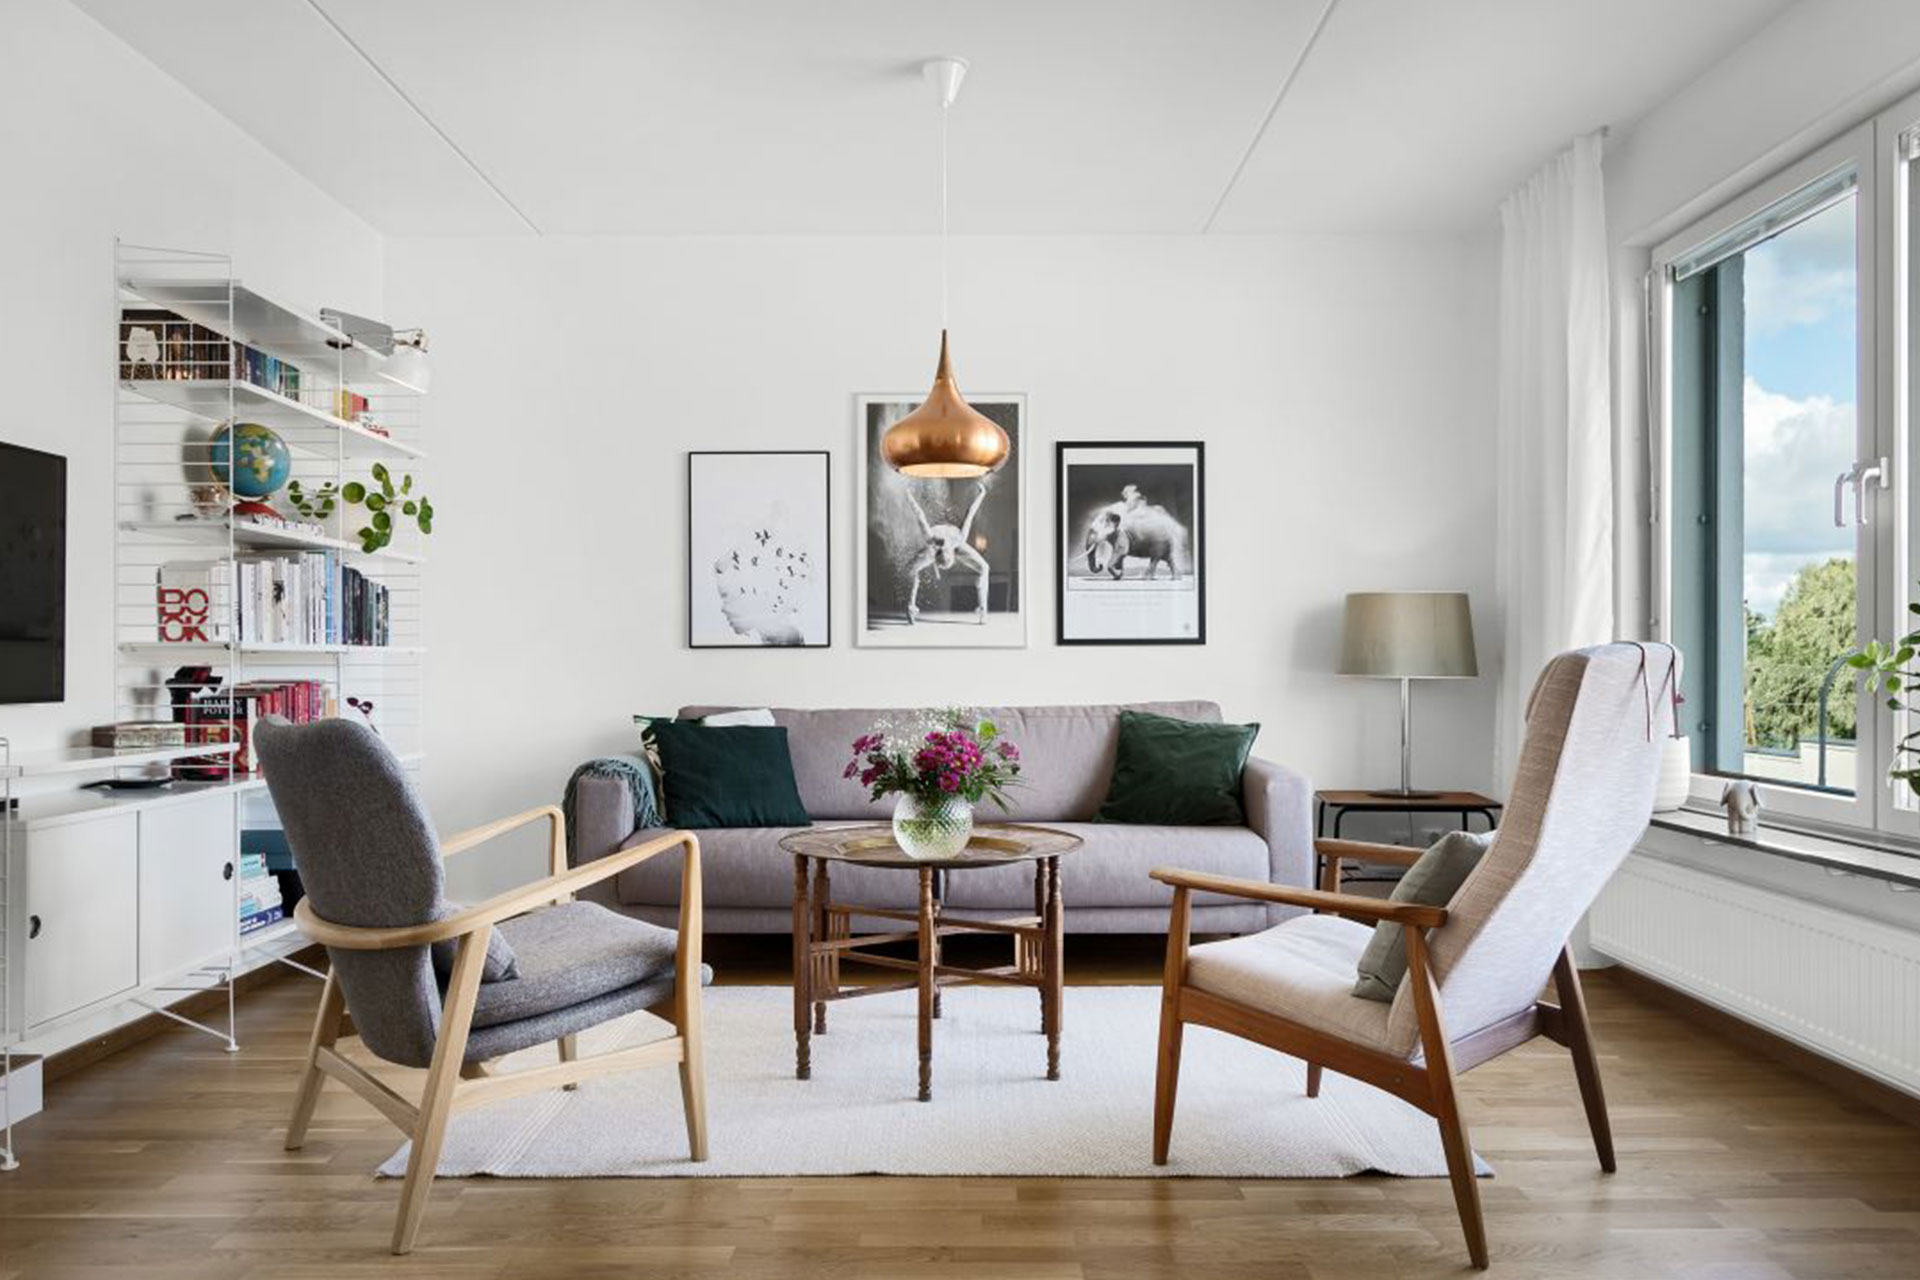 Lägenhet i Uppsala som filmades för extra spridning